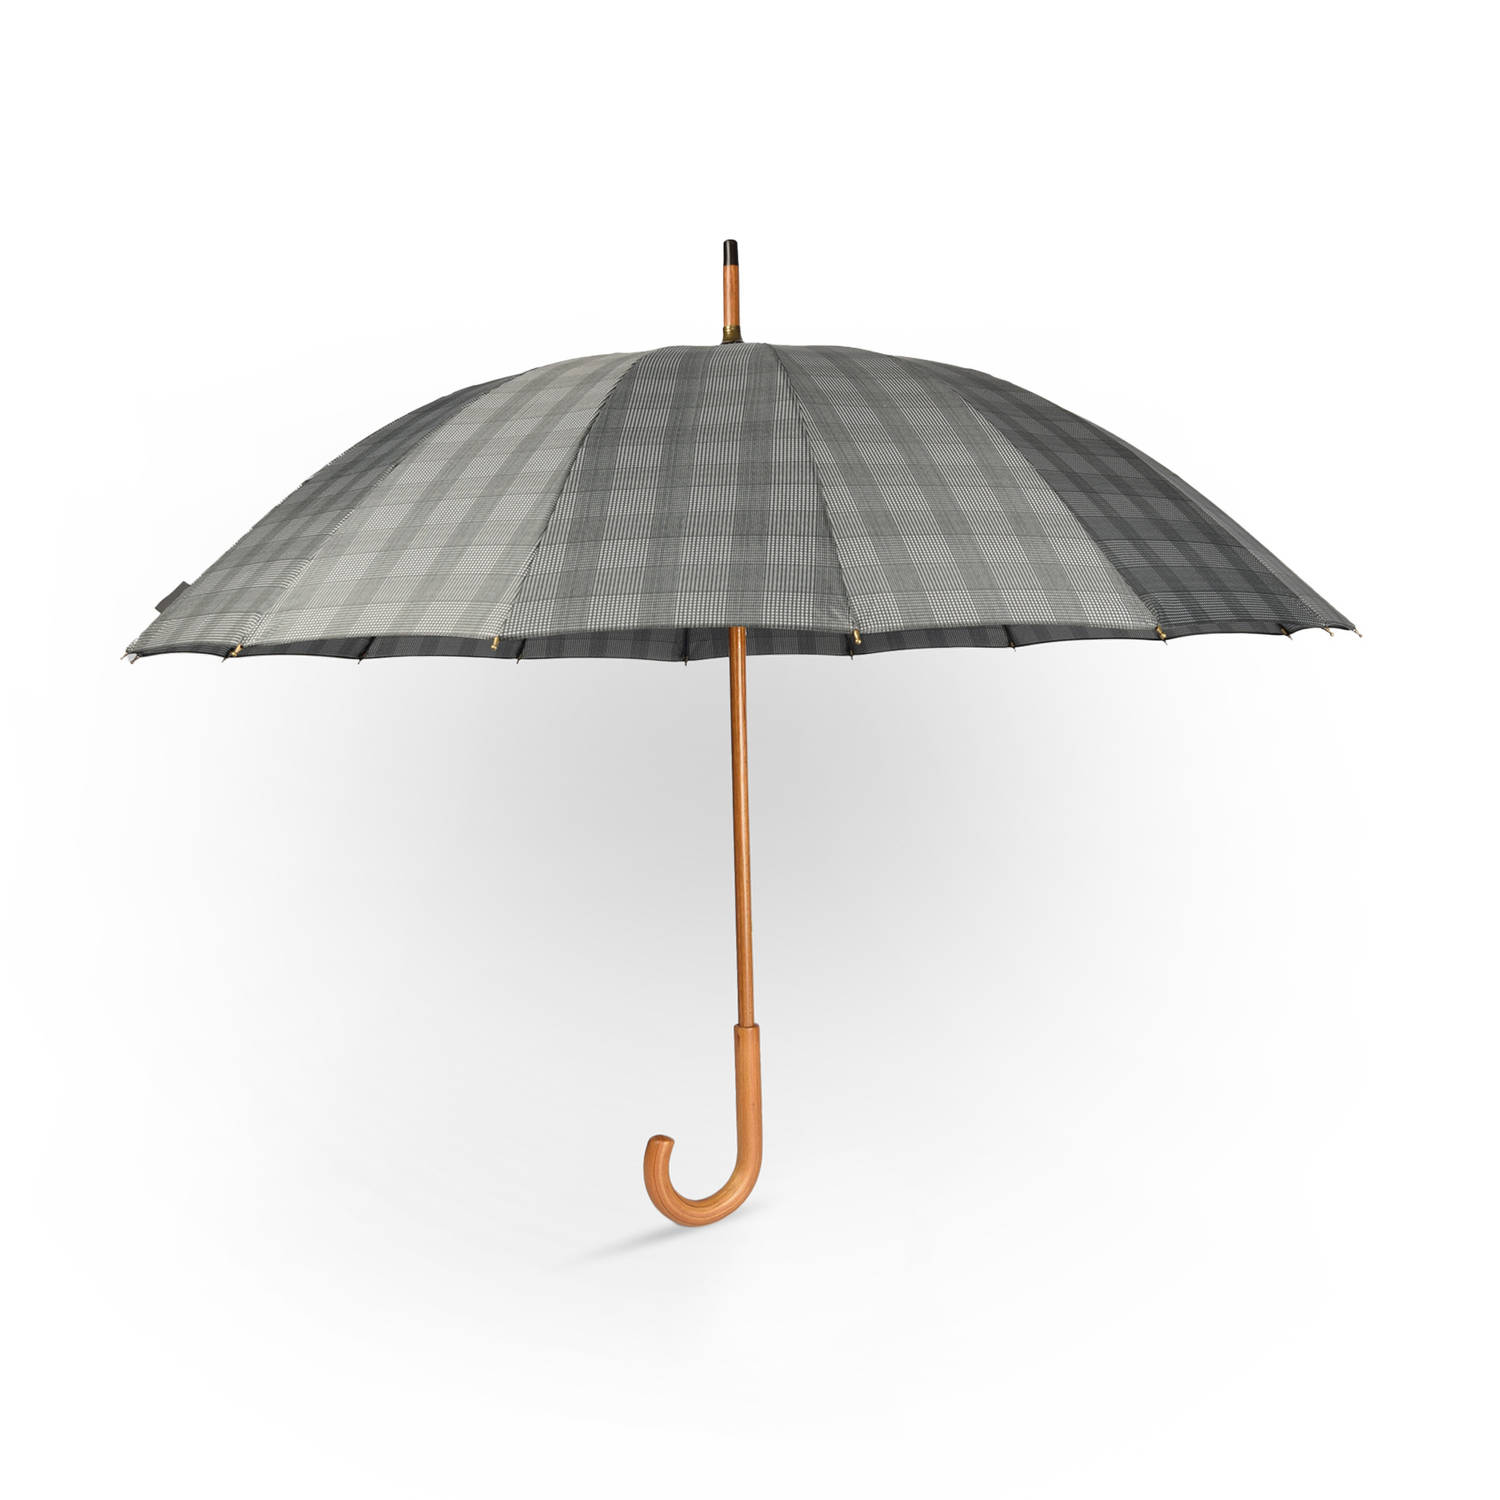 Grote Grijs Paraplu met Houten Handgreep - Automatisch Windproof - Ø102cm - Geïnspireerd door Prince of Wales Check - Polyester Pongee & Fiberglass